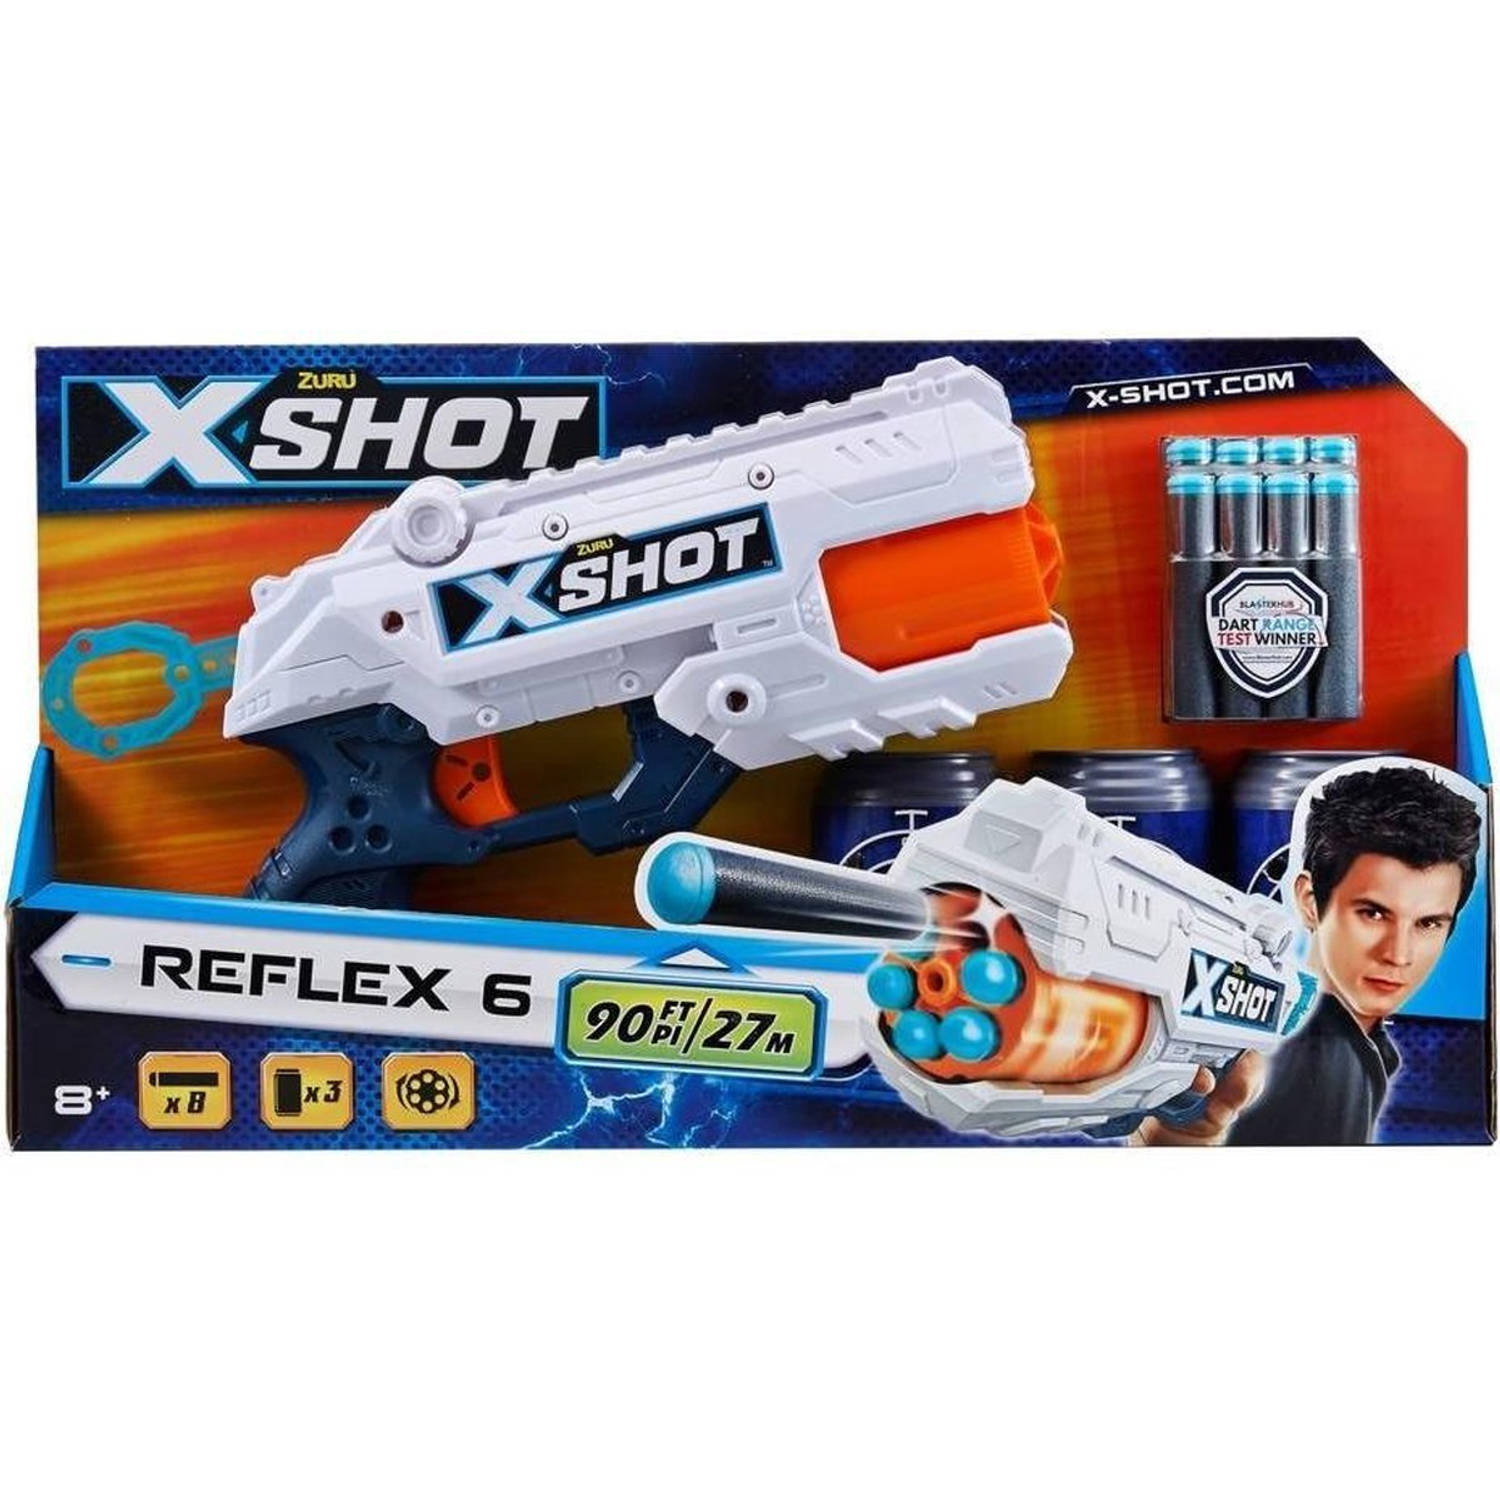 X-Shot Excel Blaster Reflex 6